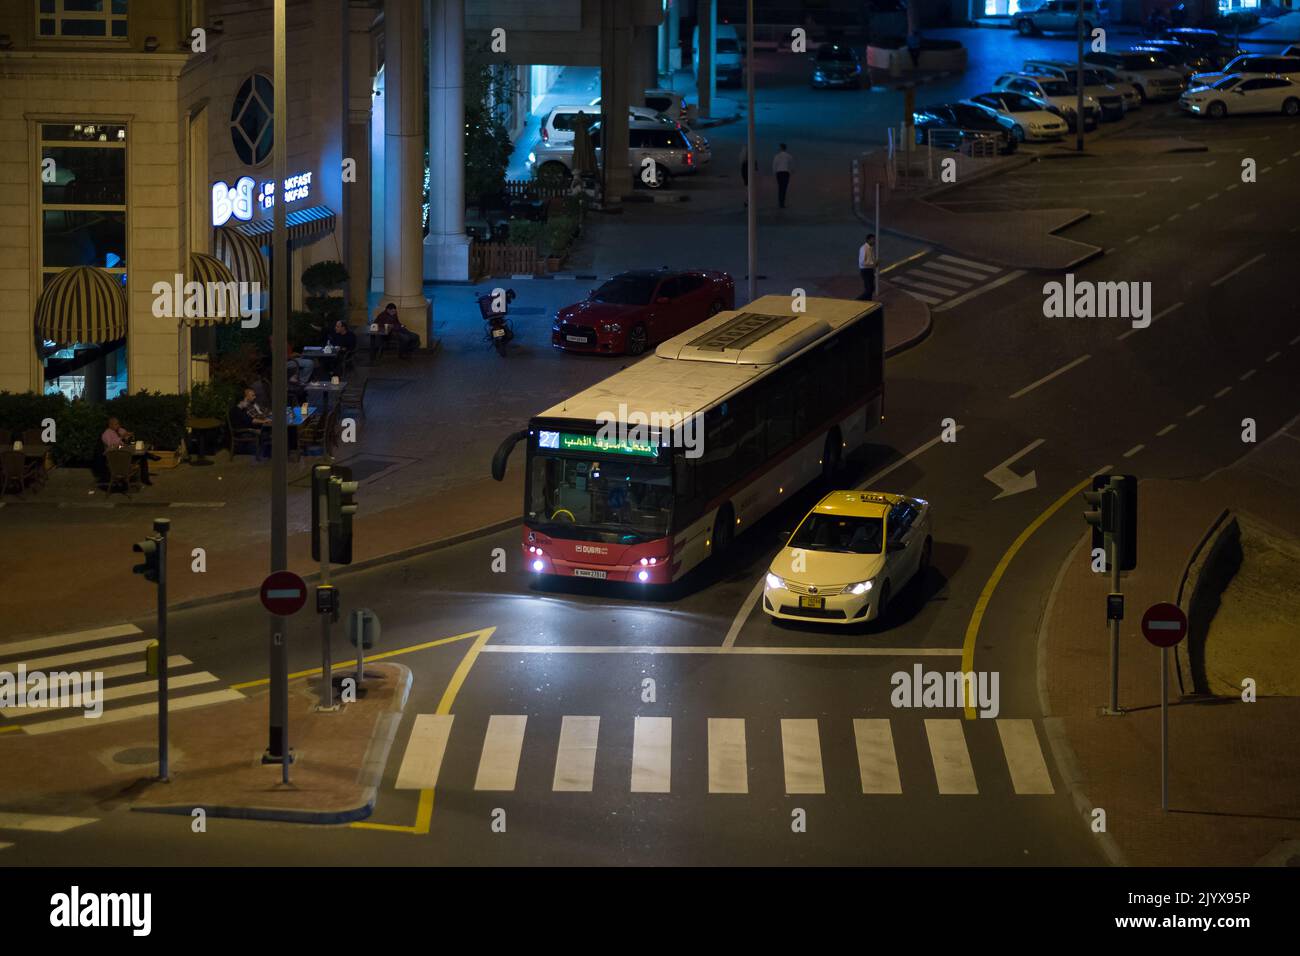 Dubai Bus und Taxi halten an einer Ampel an einem späten Abend in der Innenstadt. Der Fußgängerüberweg und die Insel sind leer. Nur wenige Leute liegen an Tischen und Stühlen vor einem Café. Stockfoto